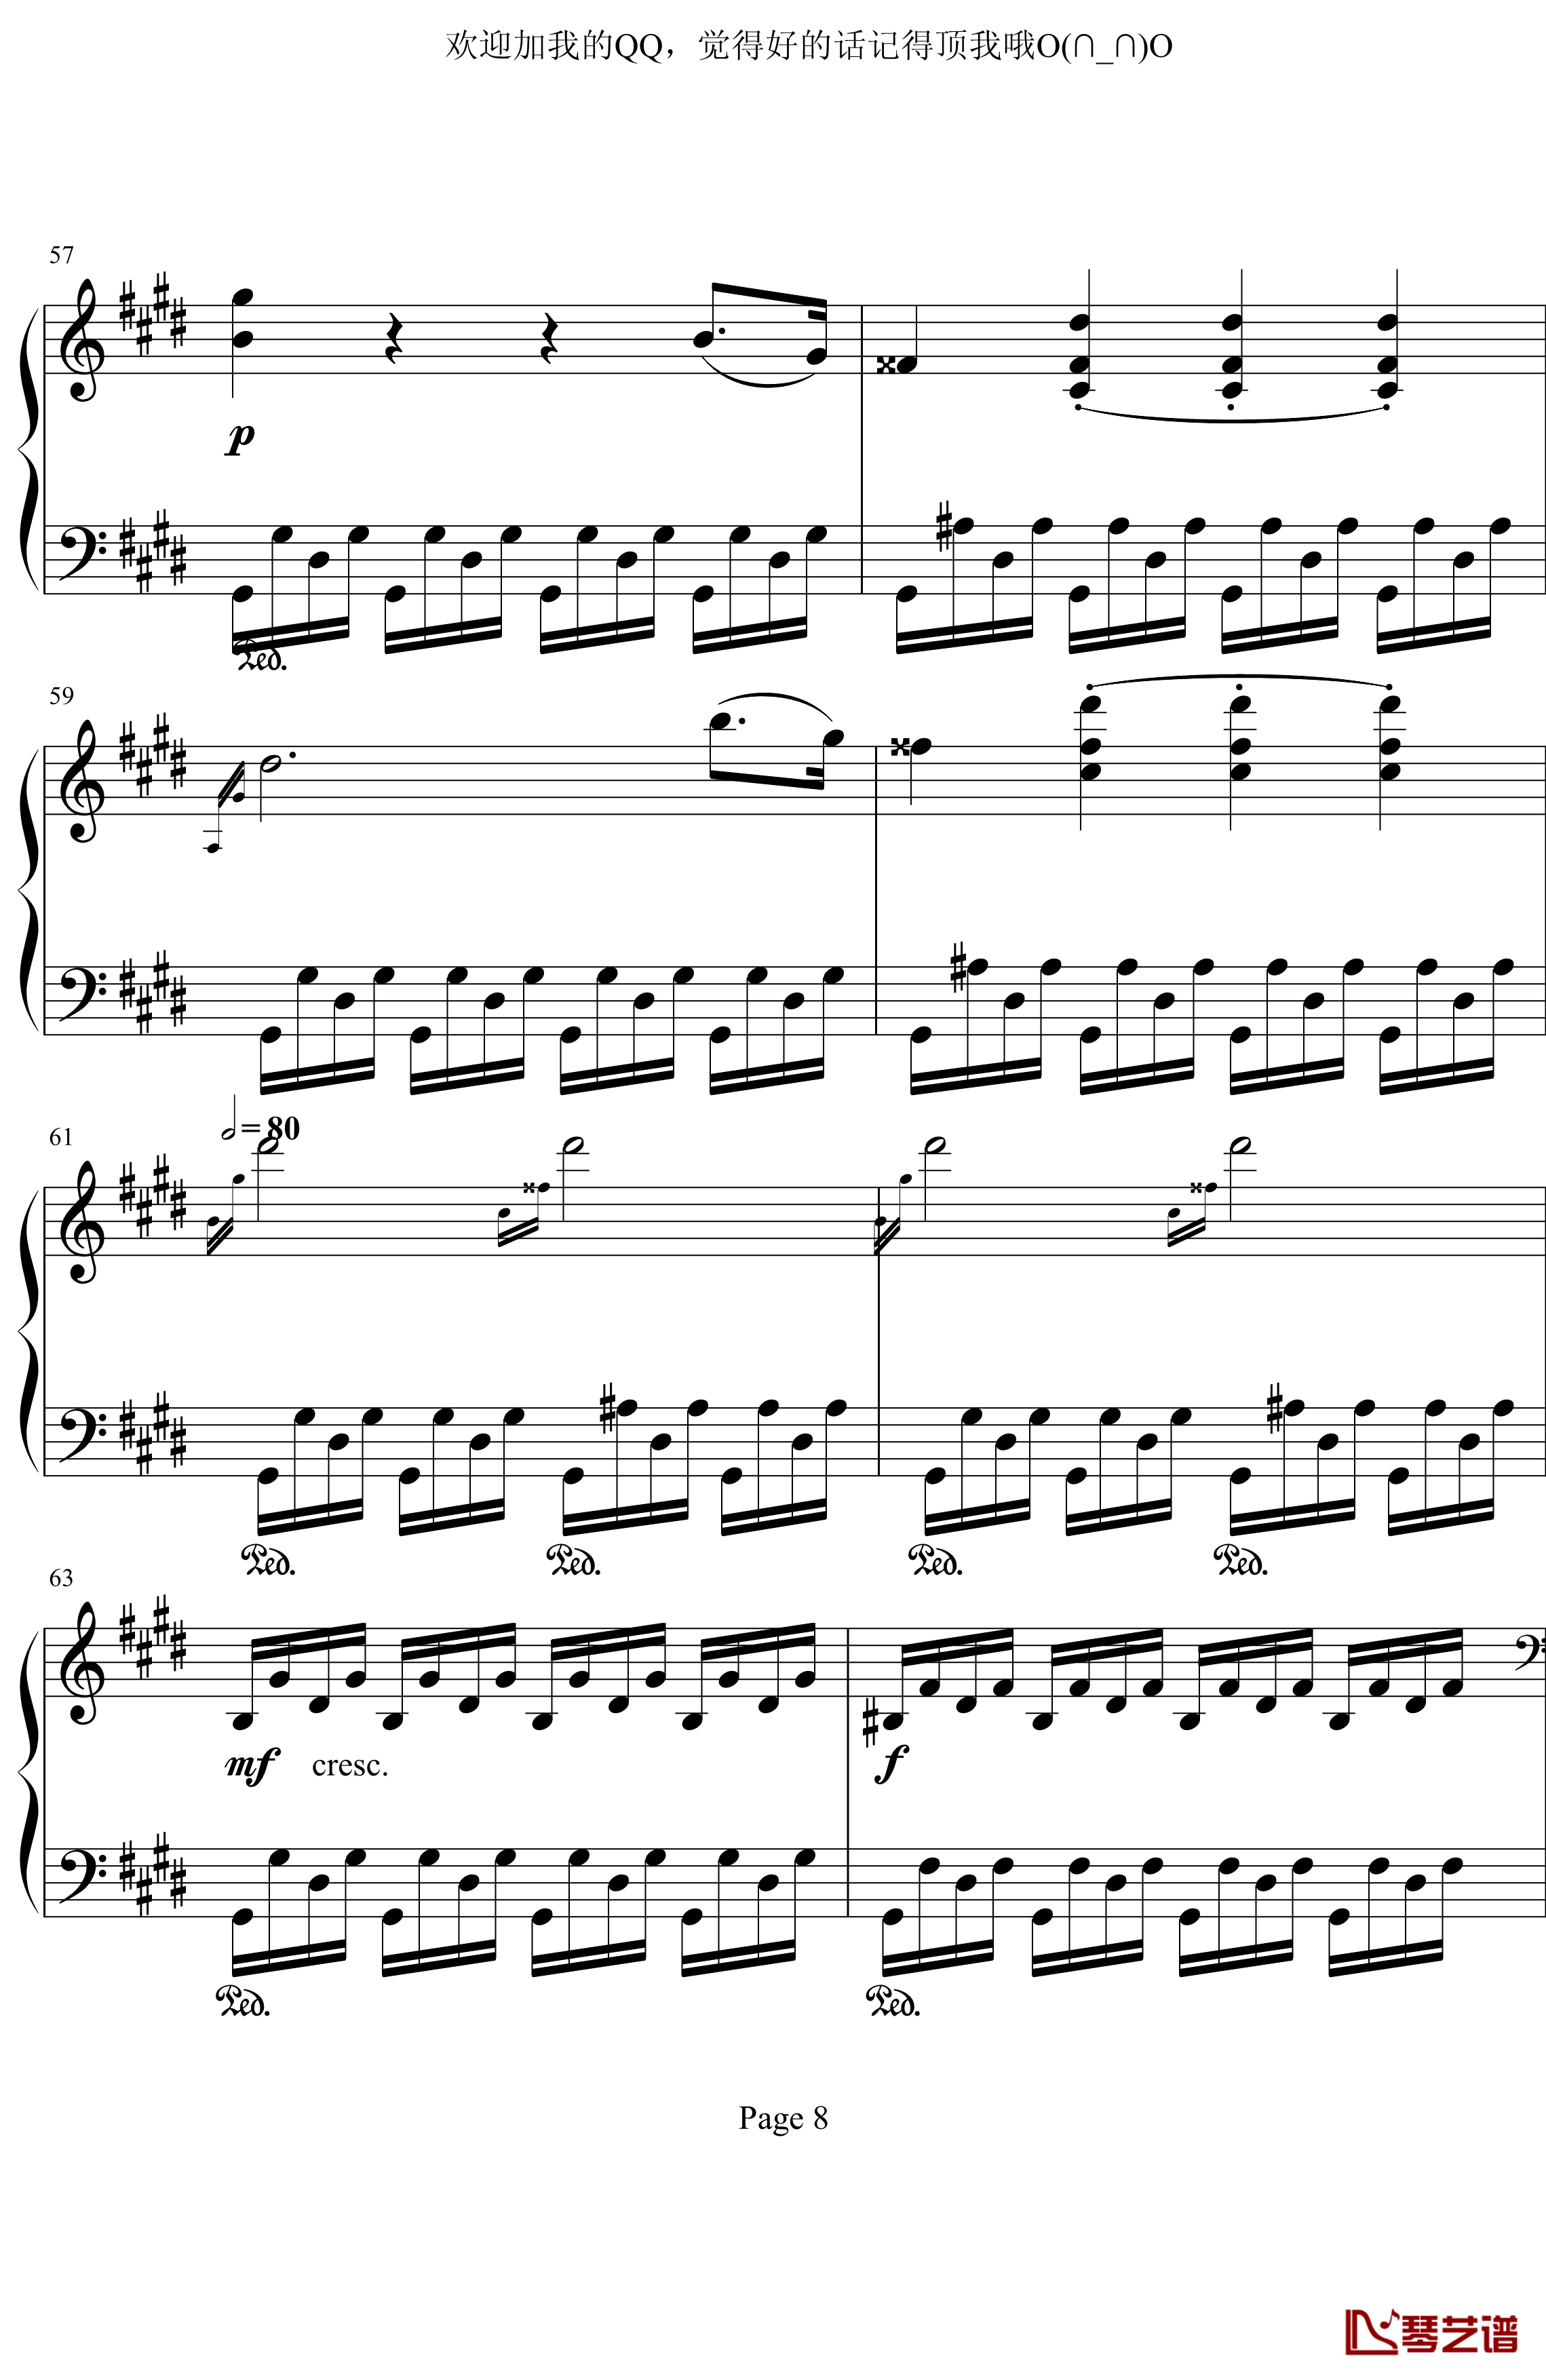 月光奏鸣曲第三乐章钢琴谱-贝多芬-beethoven8